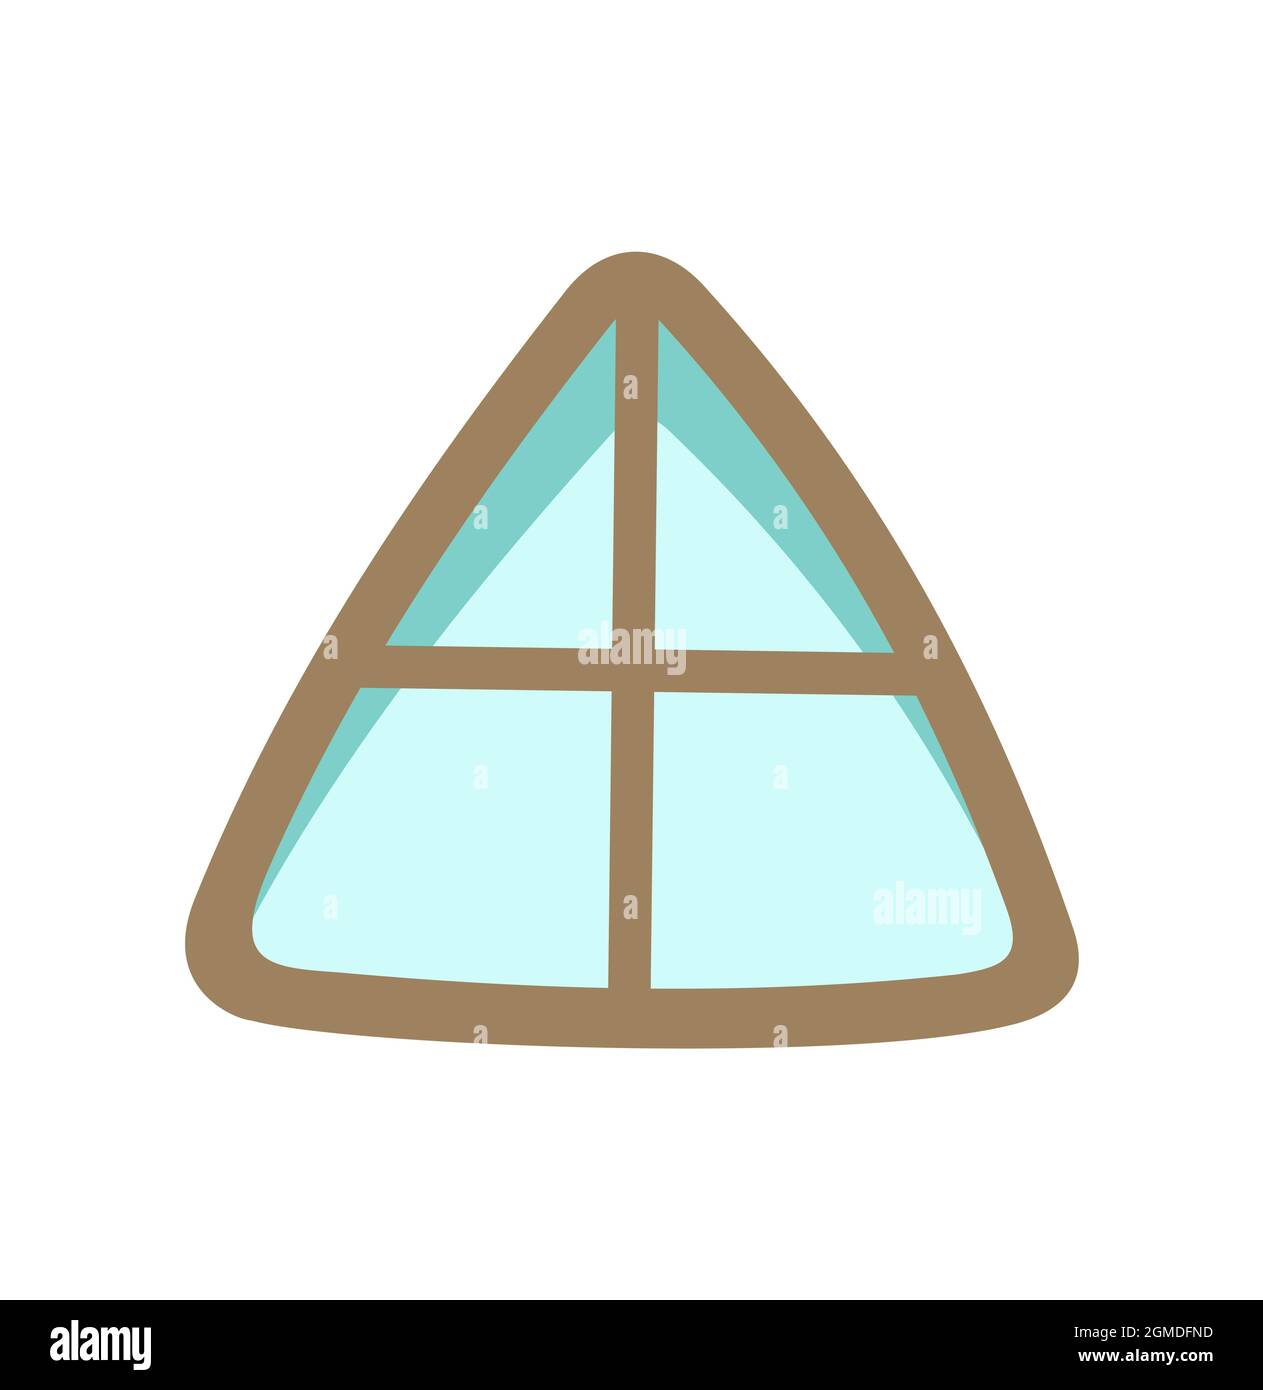 La fenêtre est triangulaire pour le toit et le grenier. Style simple et plat. Verre bleu. Jour. Joli motif conte de fées. Isolé sur fond blanc. Vecteur Illustration de Vecteur